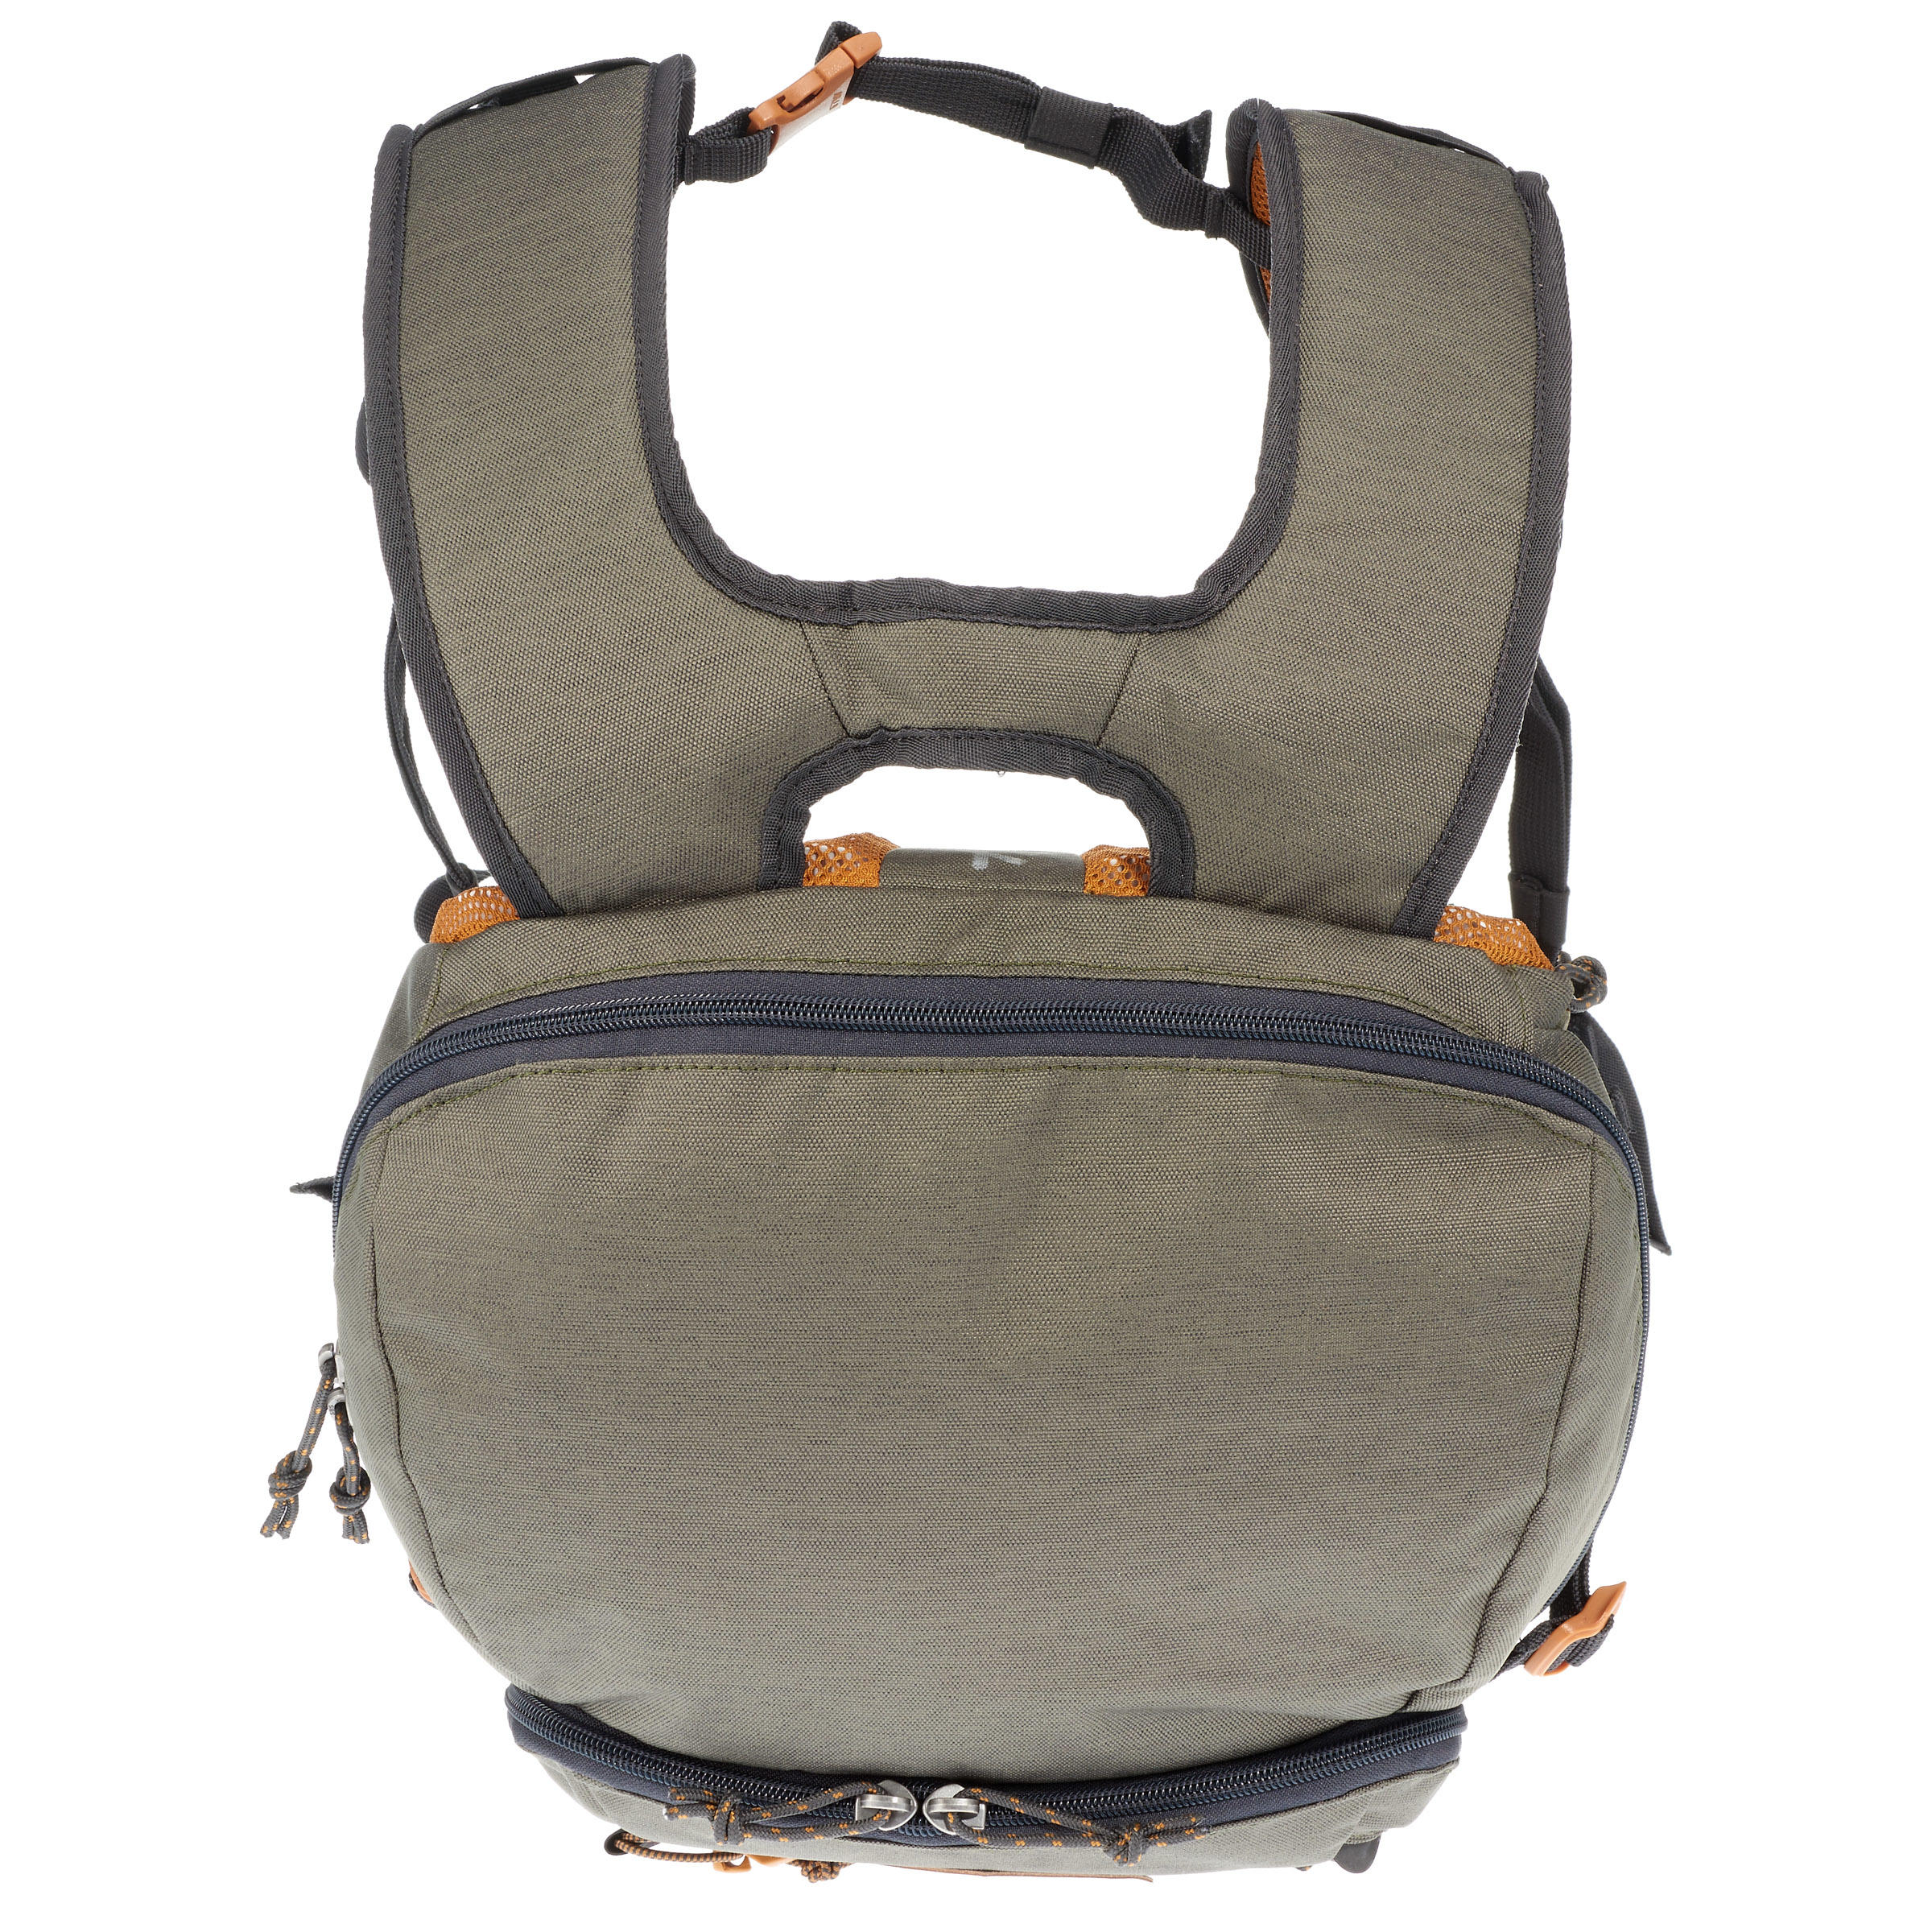 Hiking backpack 30L - NH500 21/23